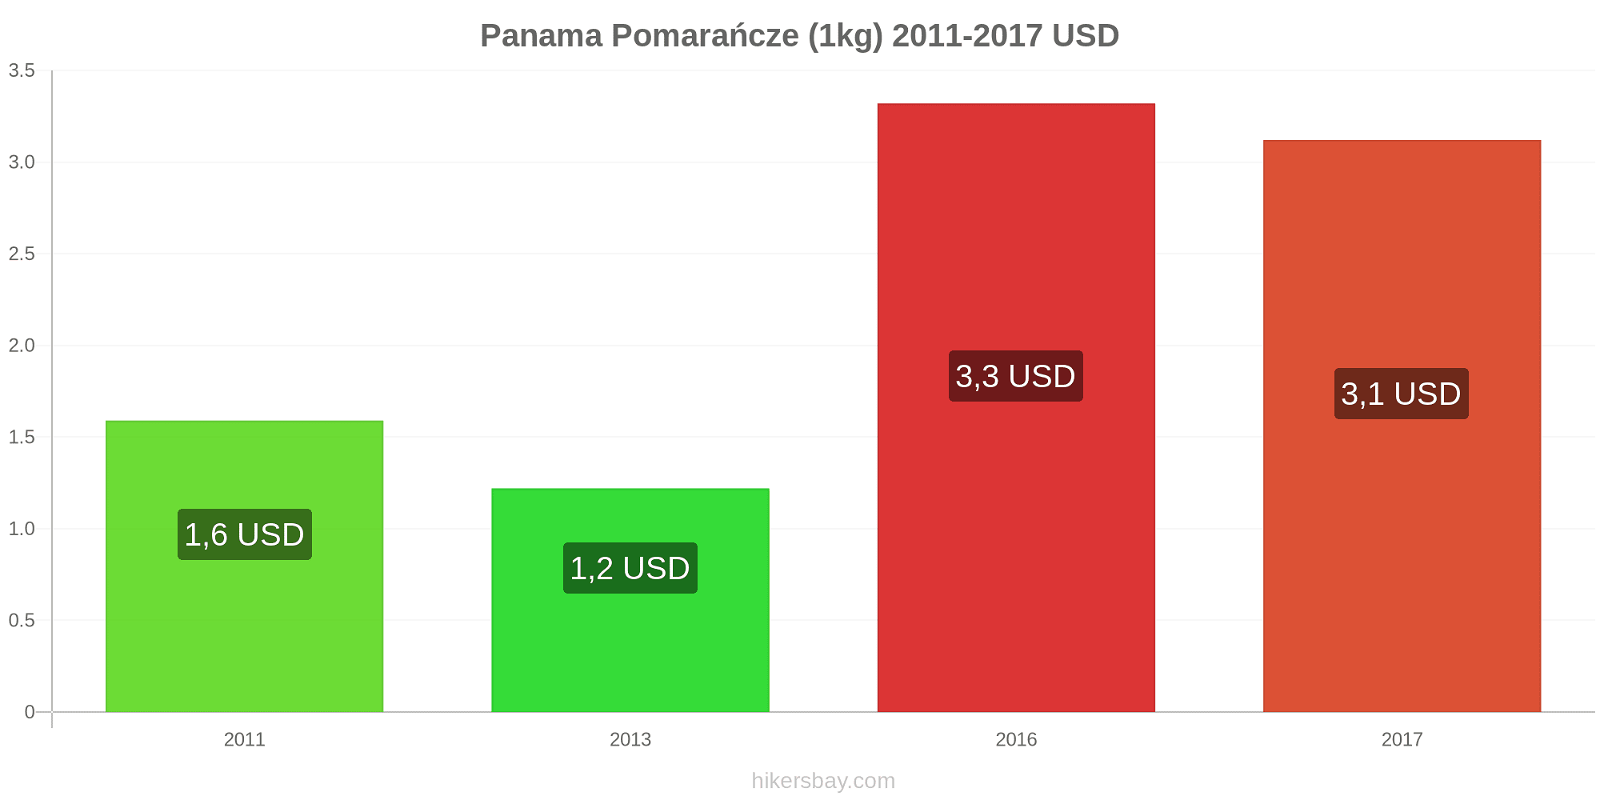 Panama zmiany cen Pomarańcze (1kg) hikersbay.com